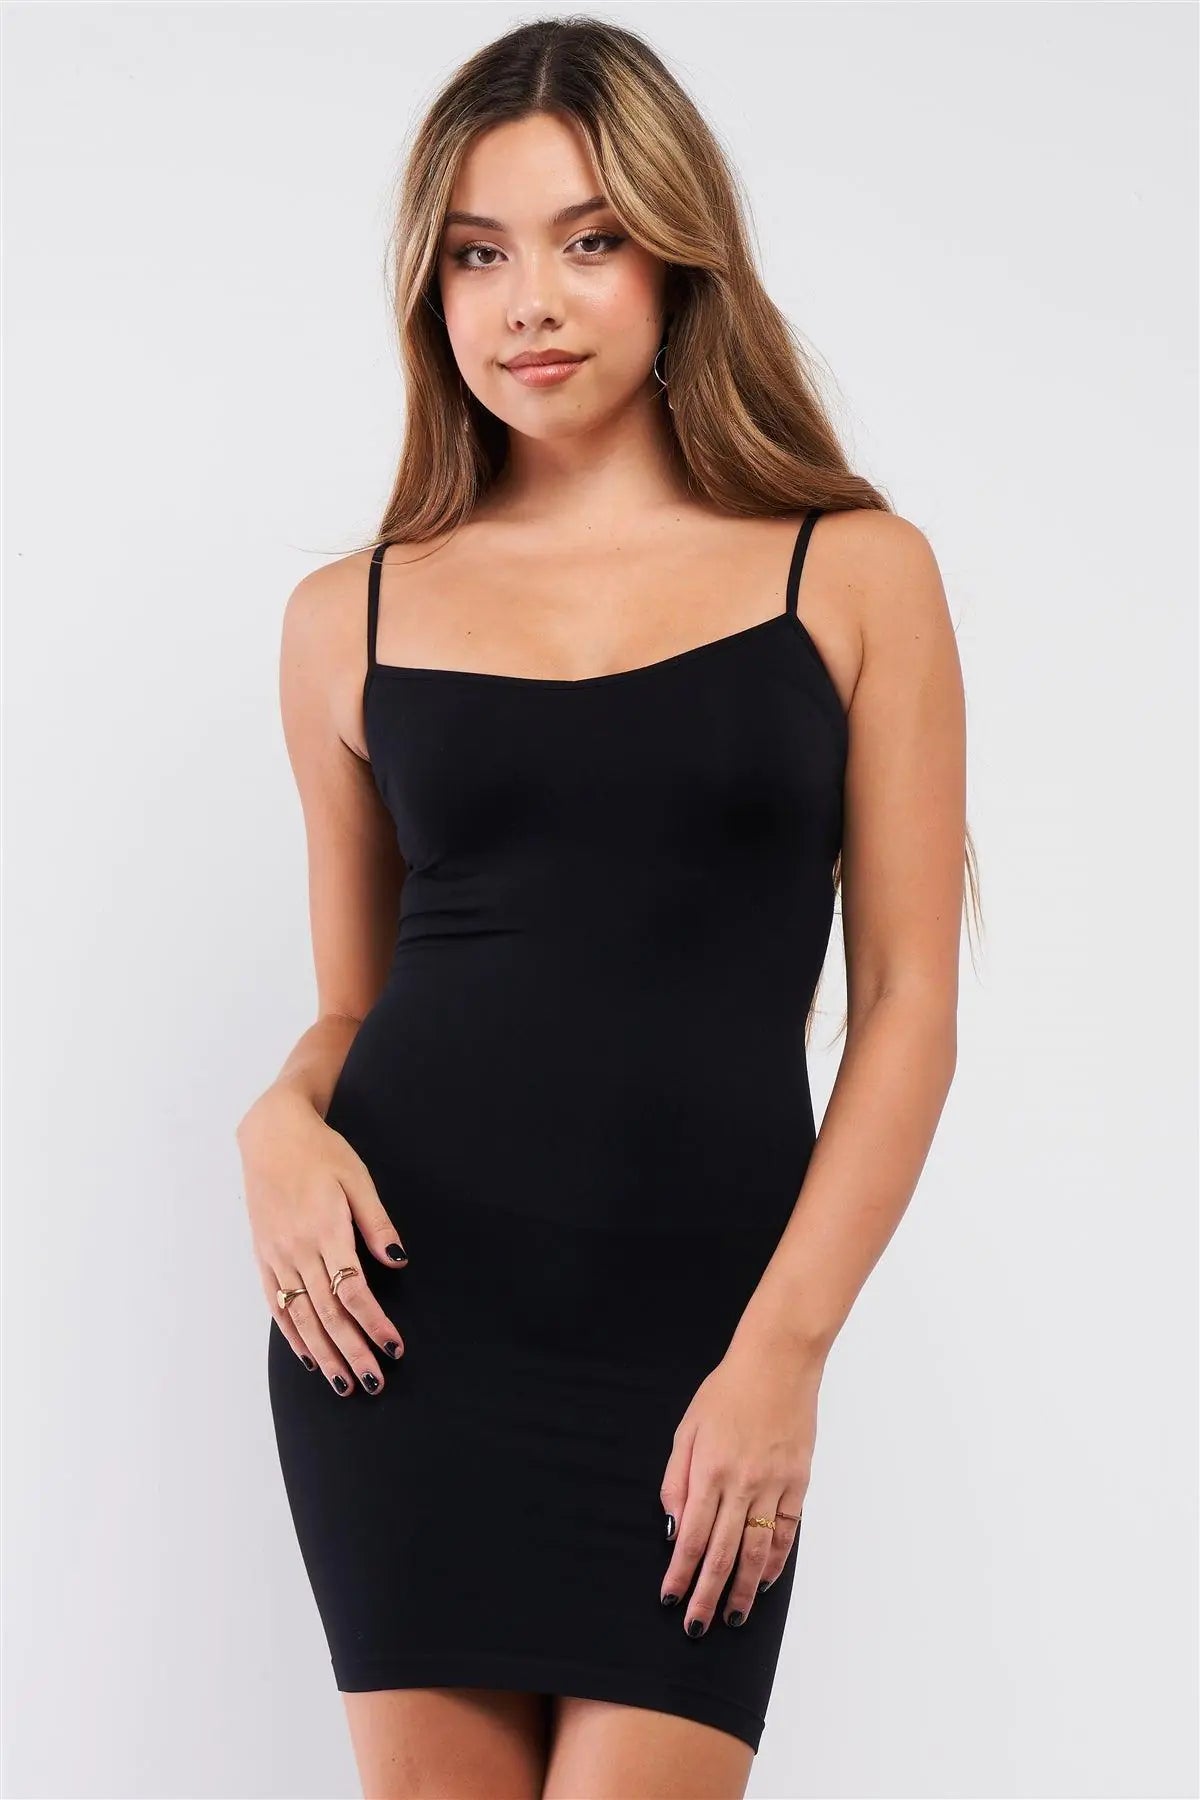 Black Slimming Underwear Under Dress Adjustable Straps Mini Dress /3-3